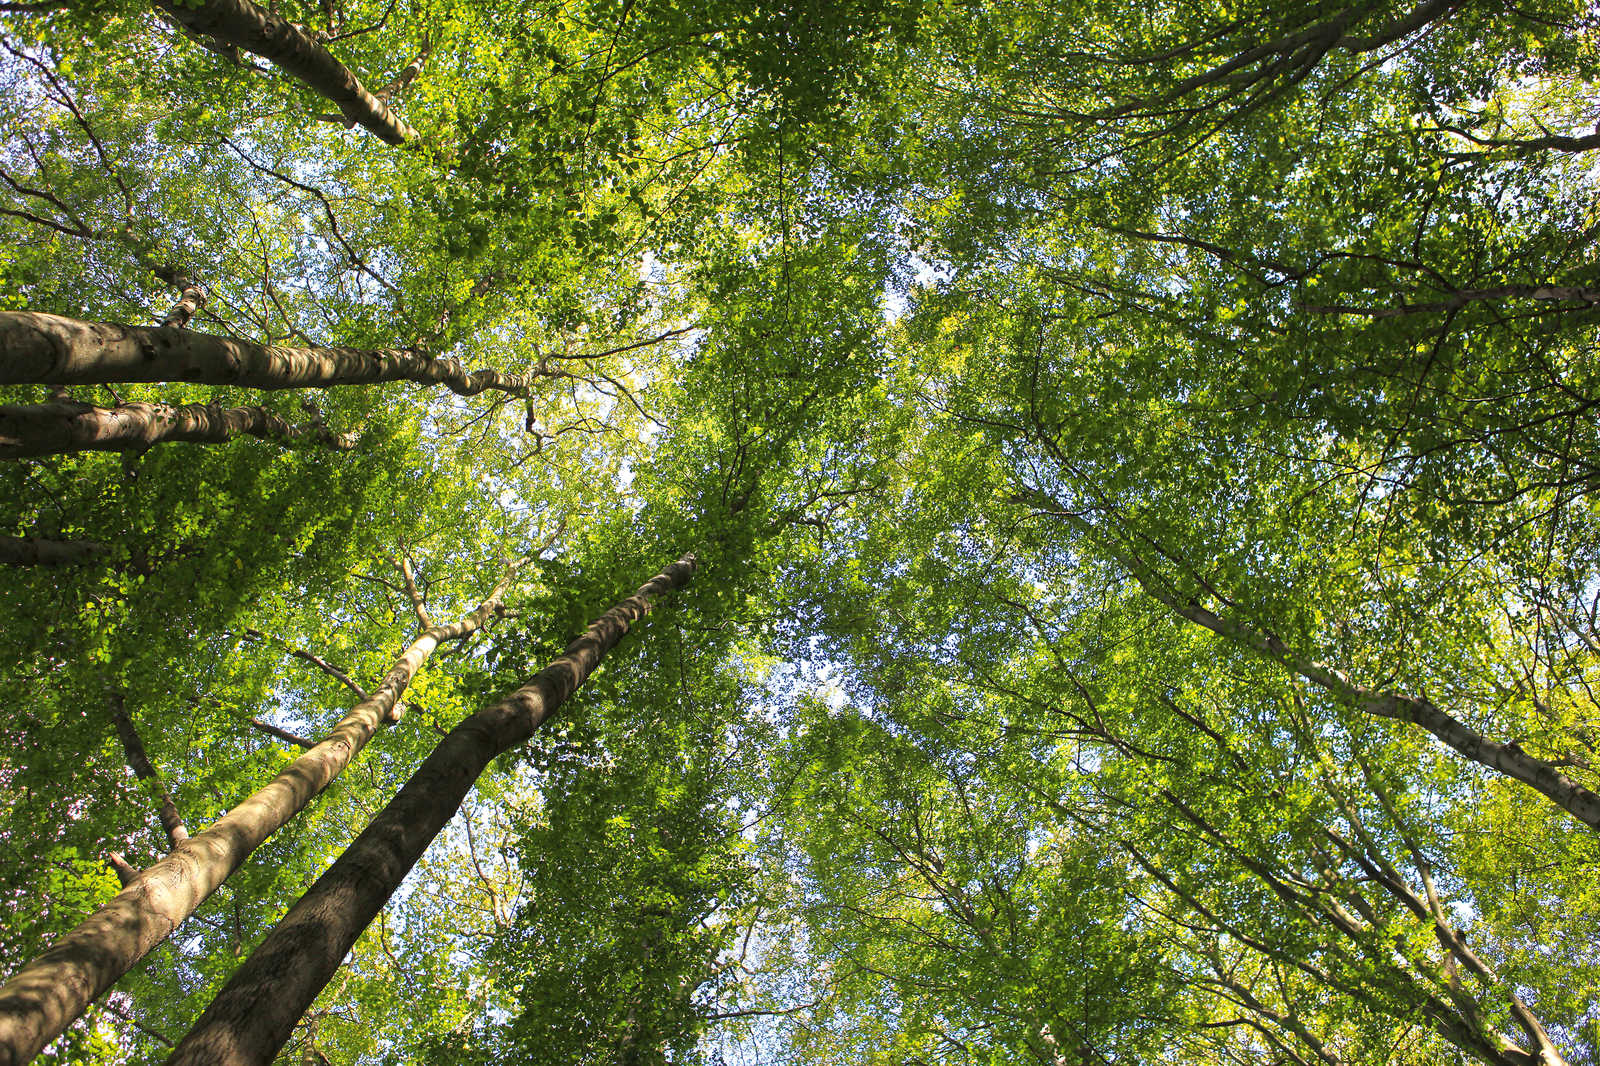             Blätterdach Leinwandbild mit Laubwald Baumwipfeln – 1,20 m x 0,80 m
        